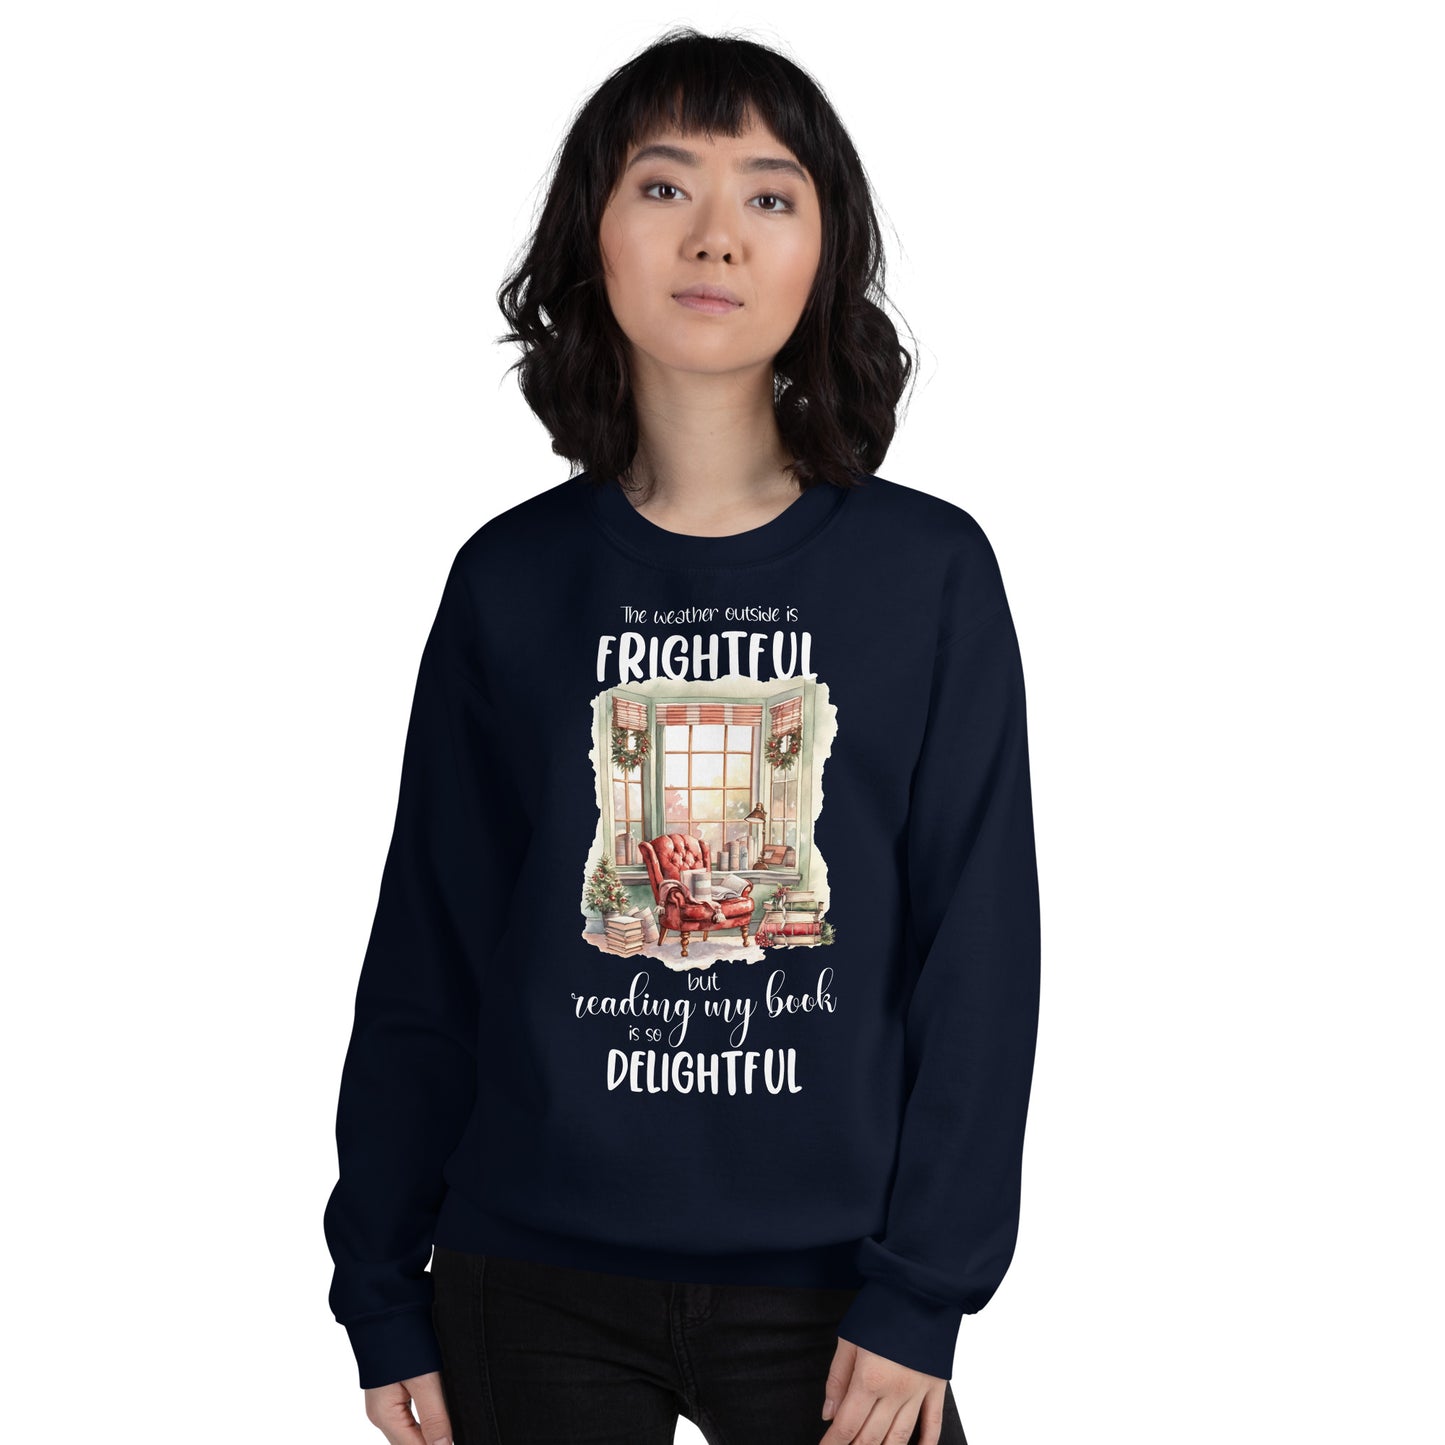 Cozy Bookish Winter Sweatshirt